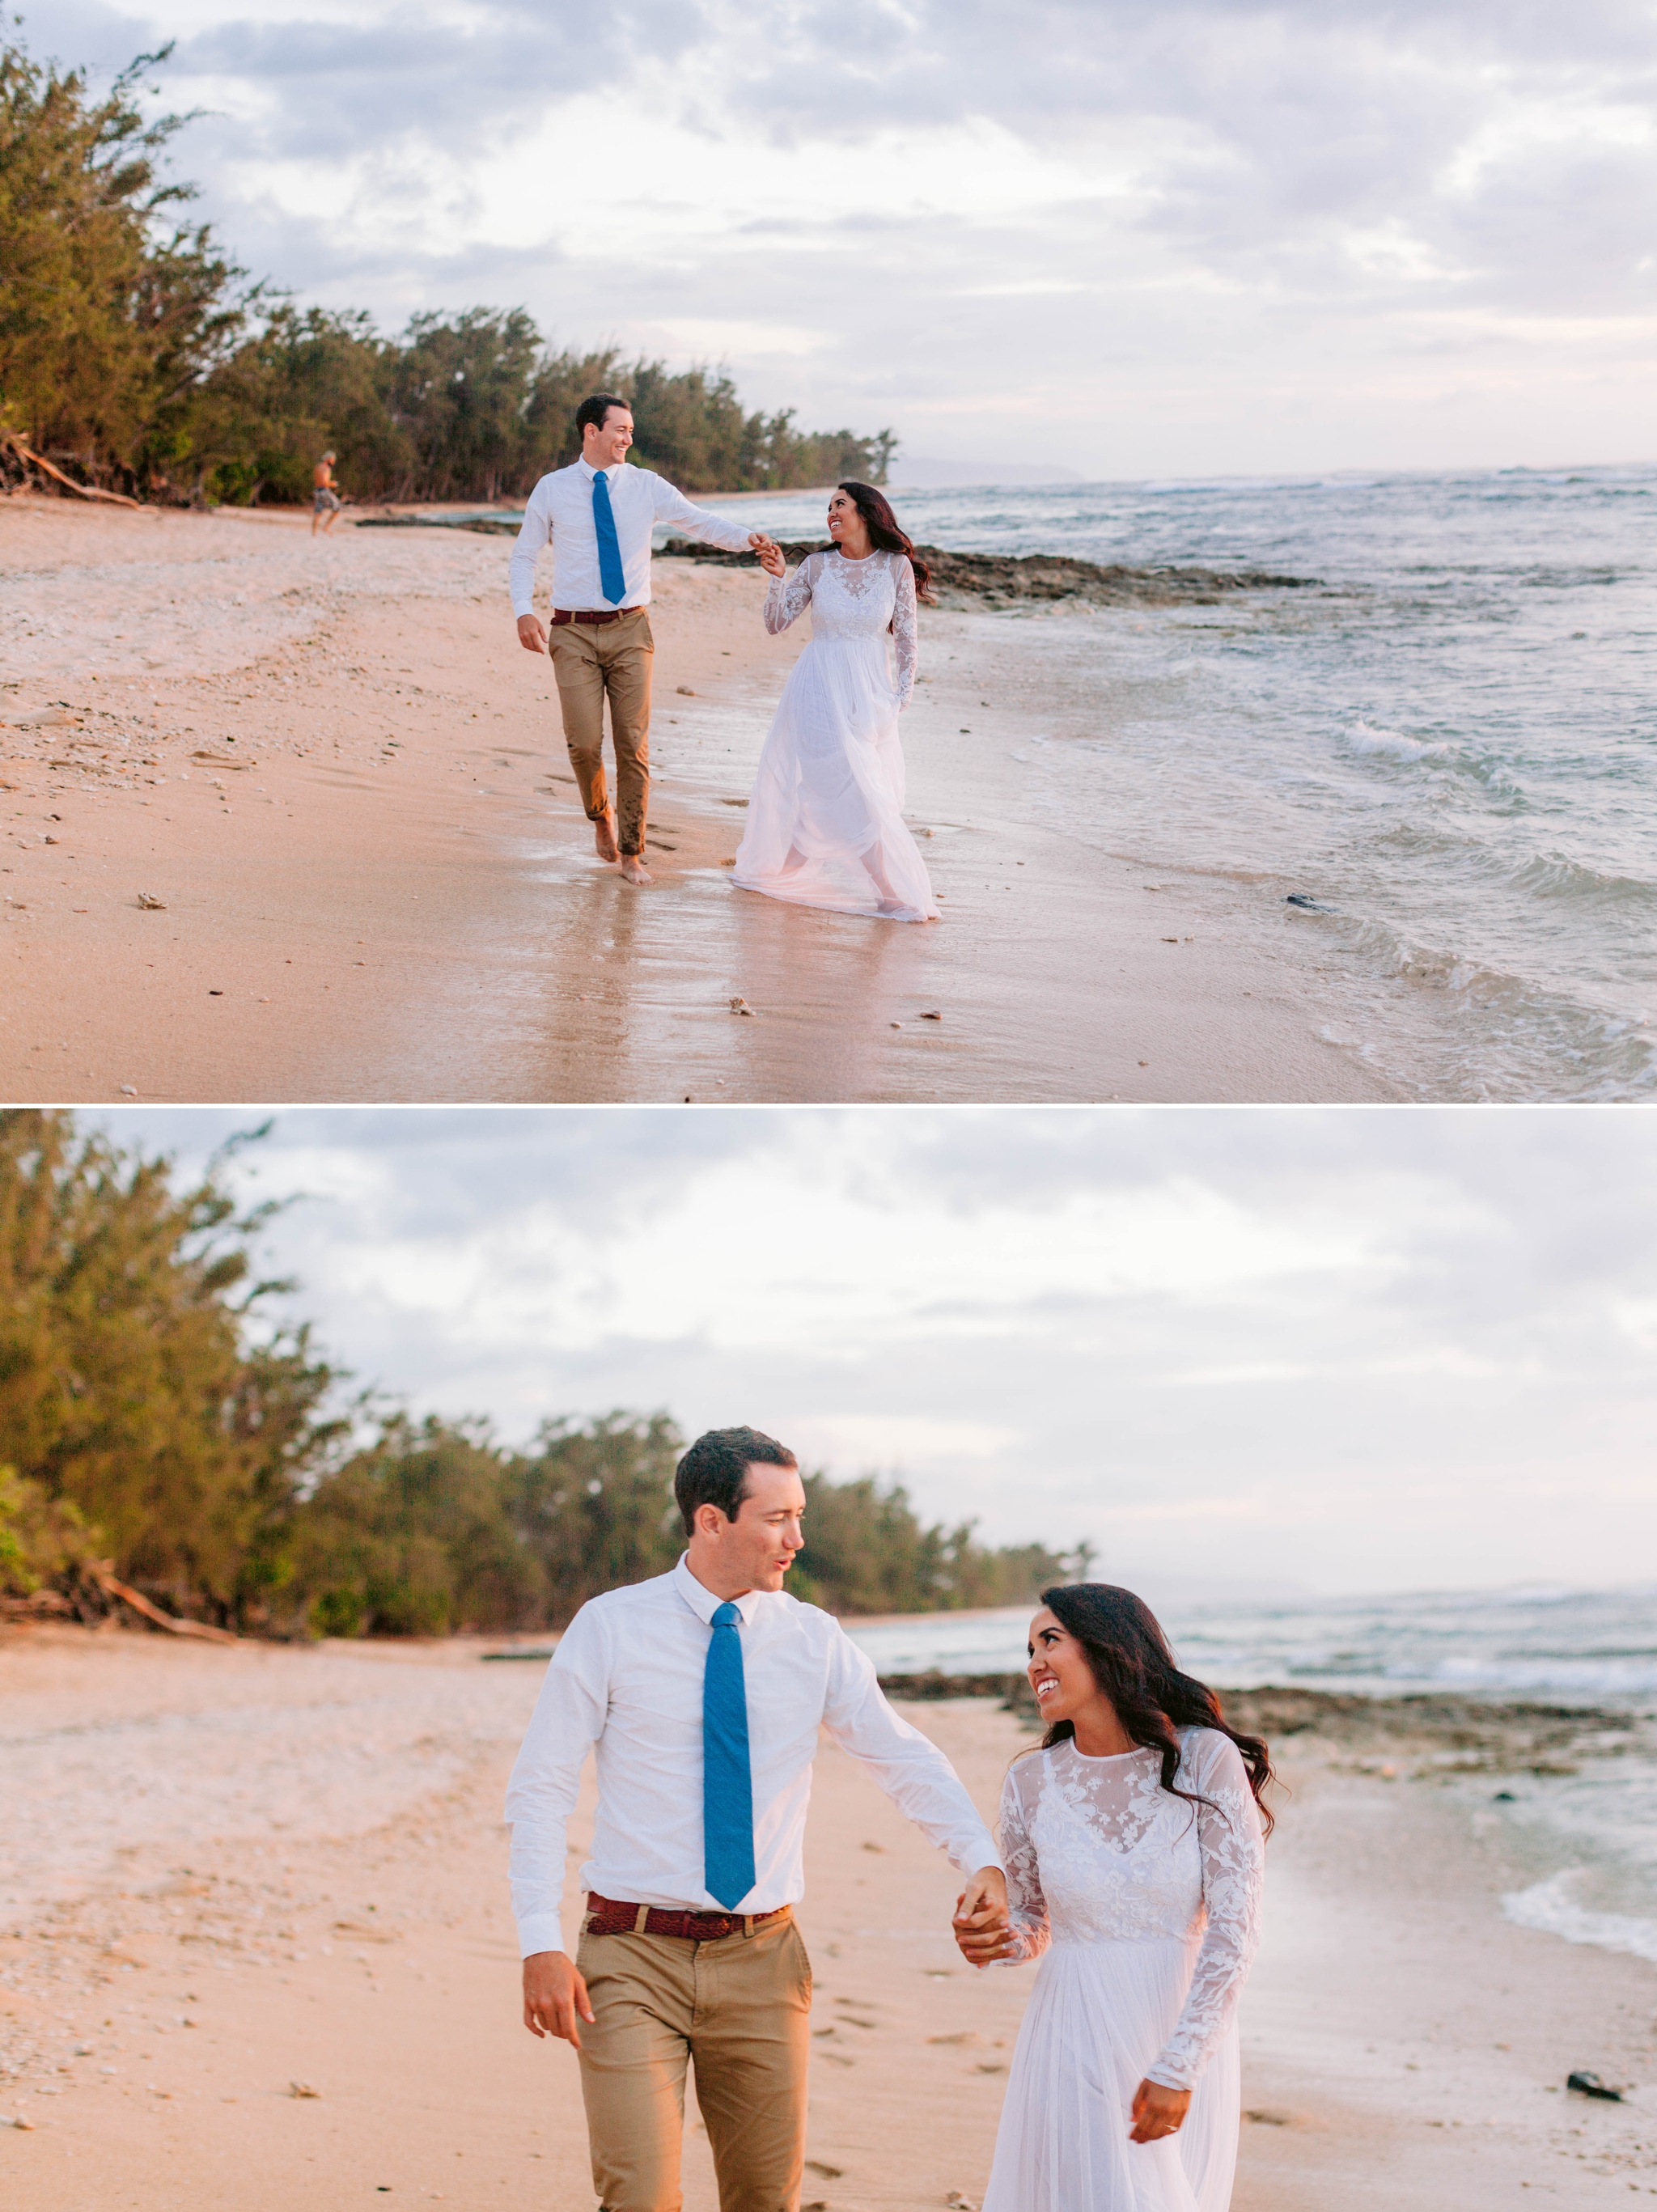  Walks on the beach - Wedding Portraits at Sunset in Hawaii - Ana + Elijah - Wedding at Loulu Palm in Haleiwa, HI - Oahu Hawaii Wedding Photographer - #hawaiiweddingphotographer #oahuweddings #hawaiiweddings 